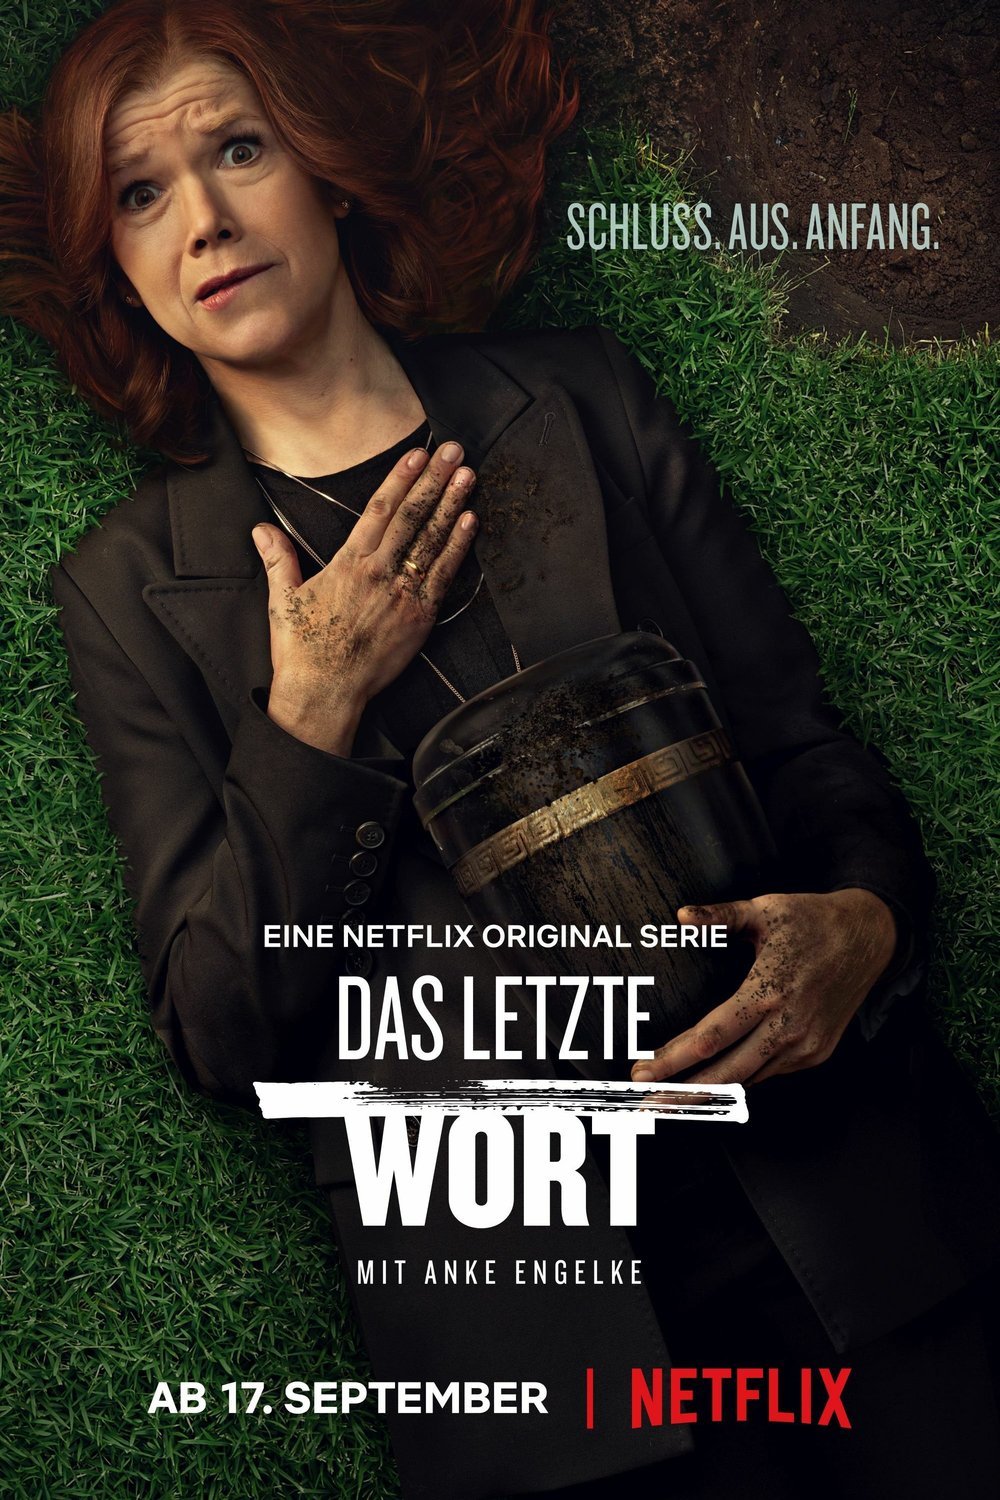 German poster of the movie Das letzte Wort